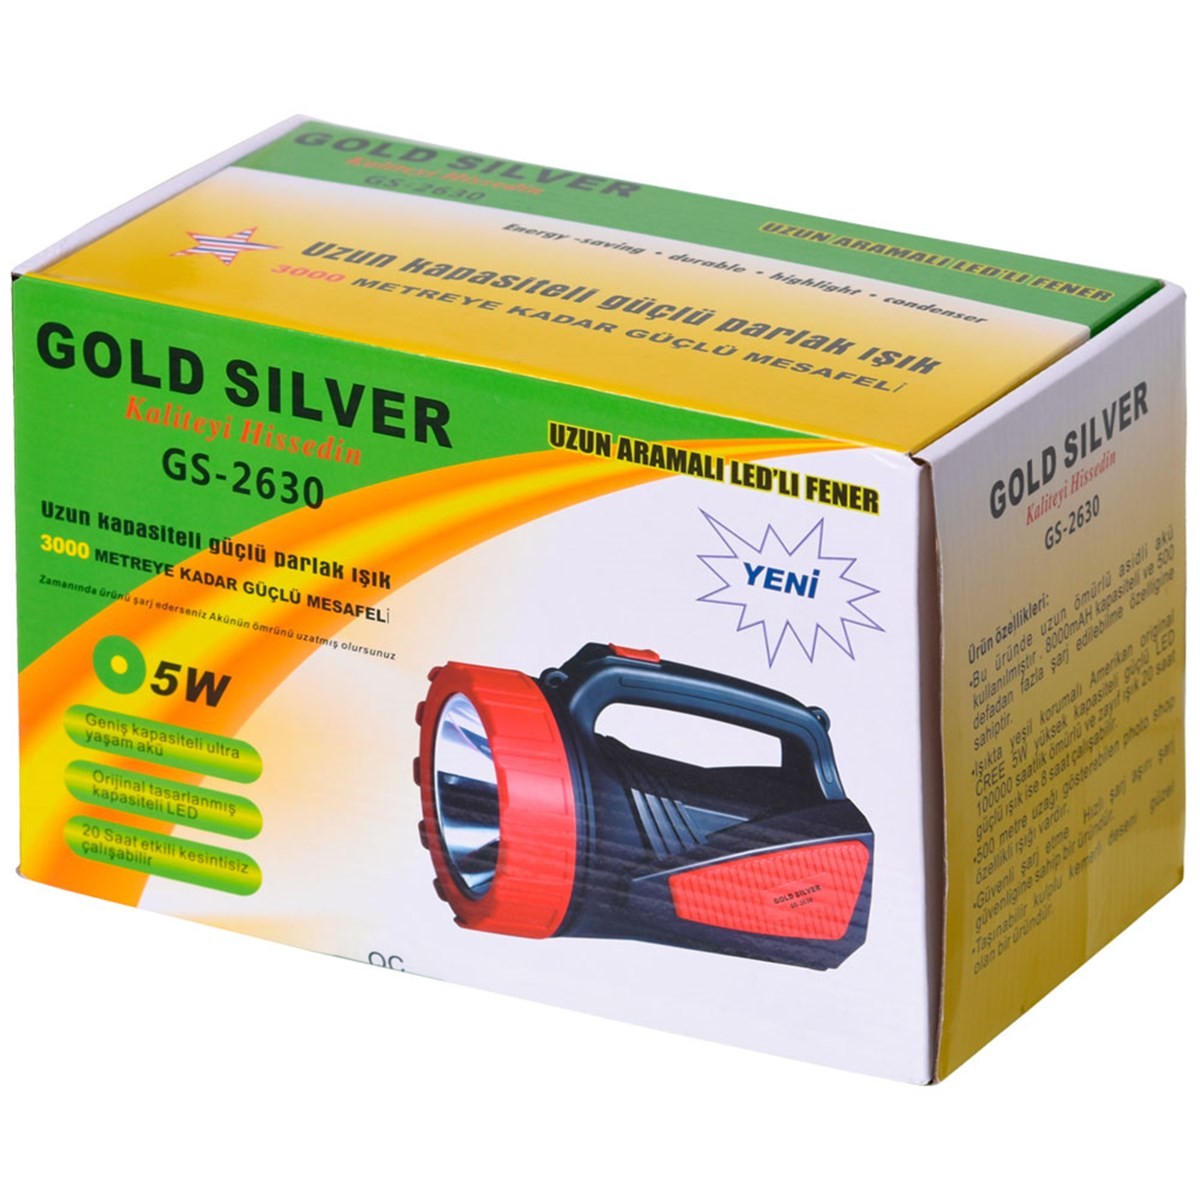 Gold Silver Gs-2630 Şarjlı Fener